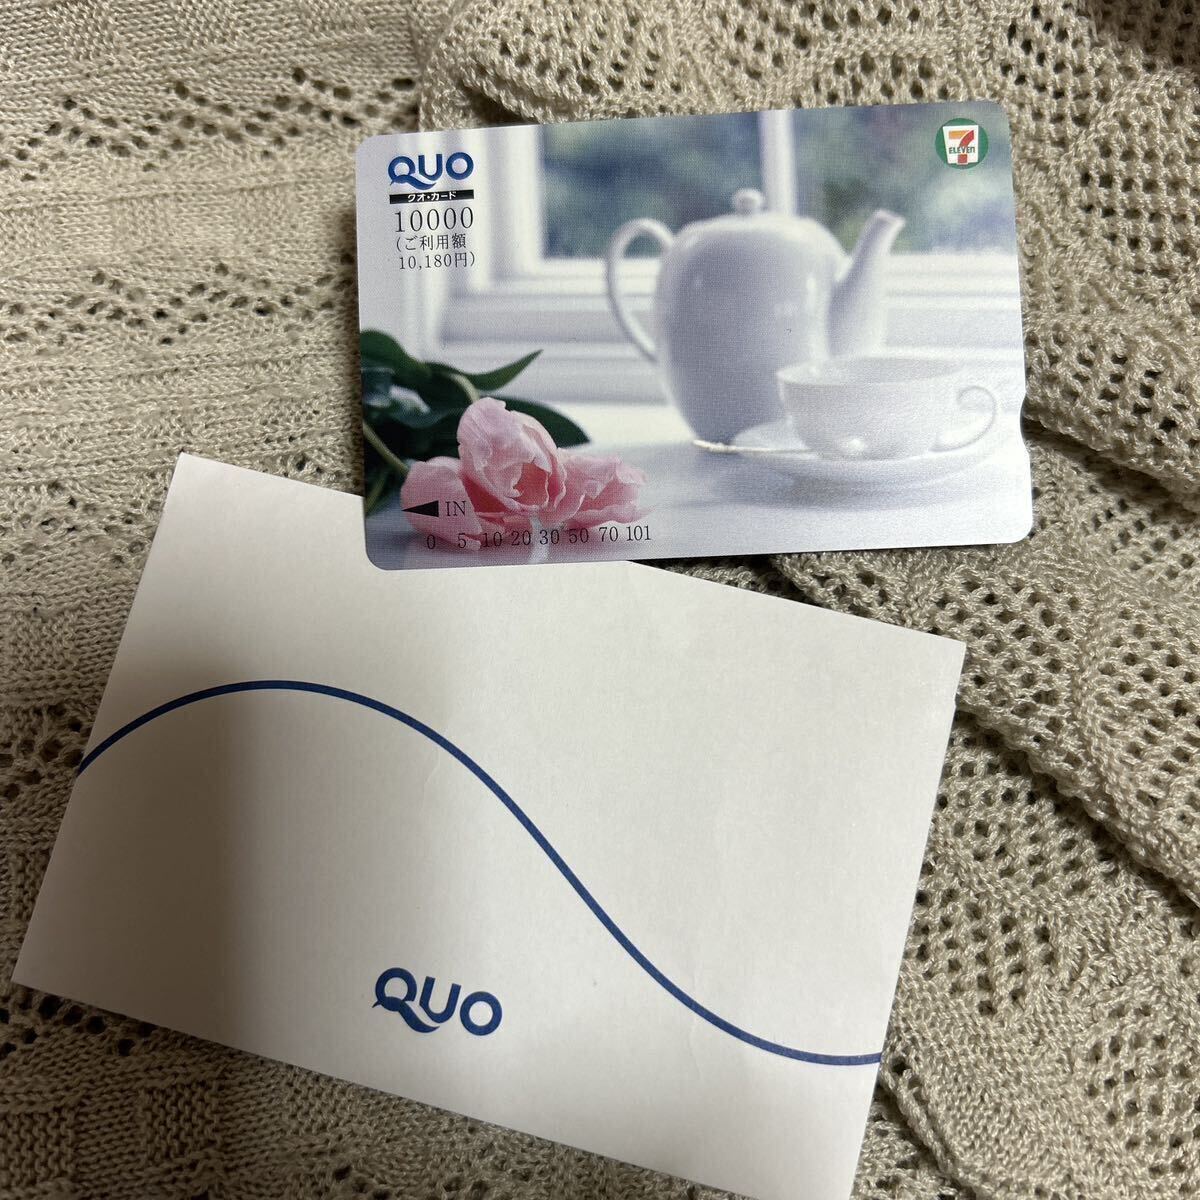 [ не использовался ] QUO card seven eleven 10000 иен ( использование сумма 10180 иен ) выгода марка возможно 